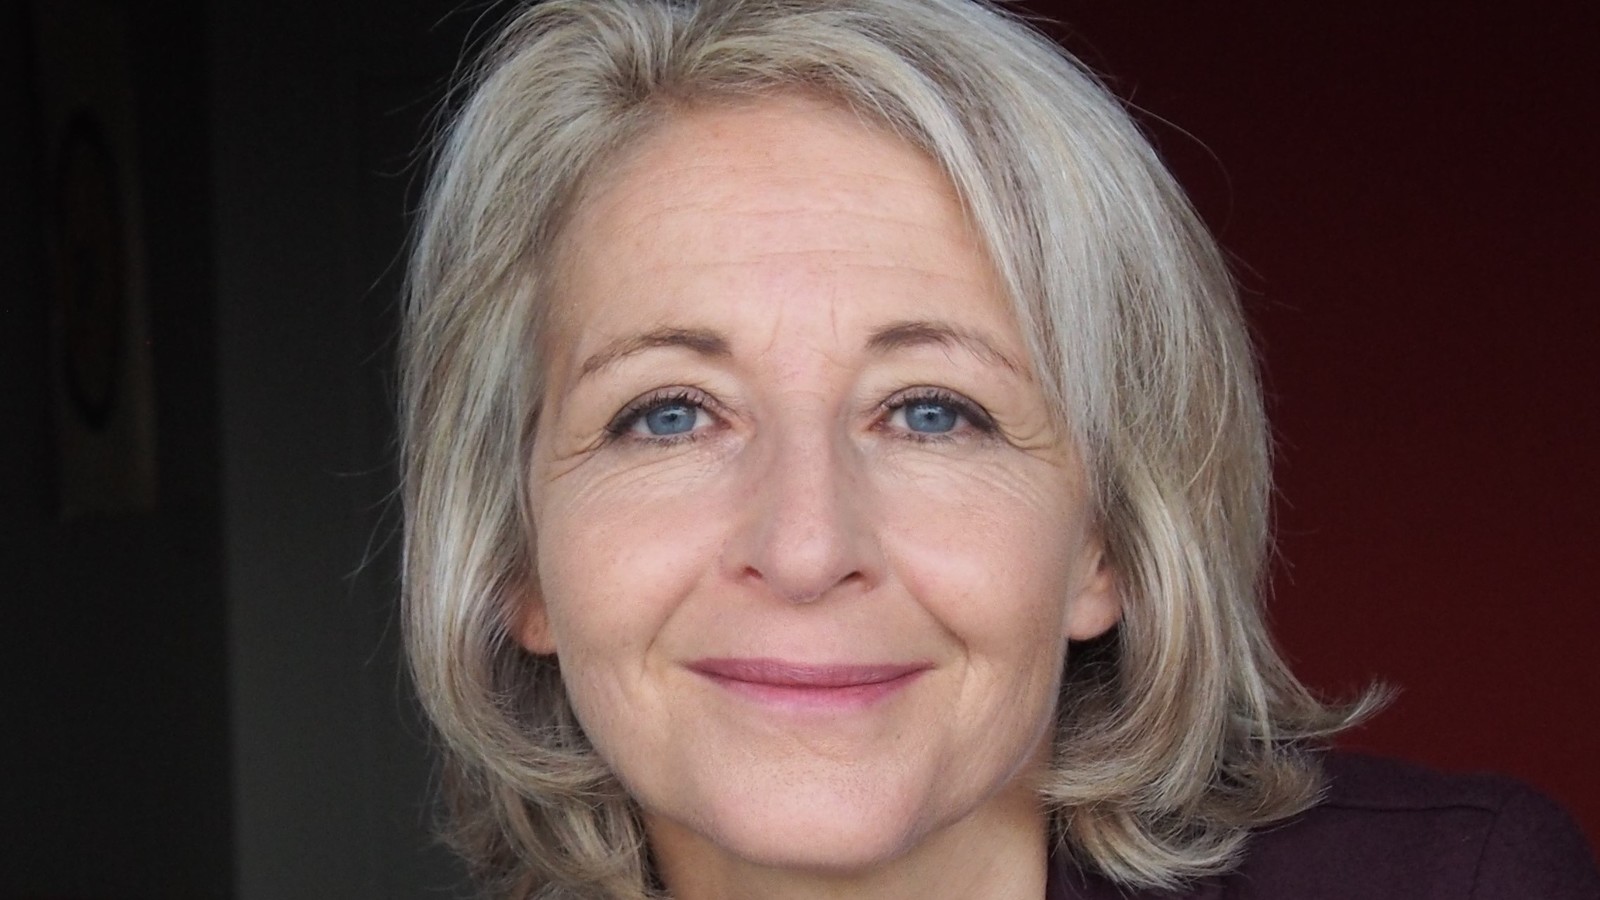 Le portrait de Laure de La Raudière officiellement nommée présidente de l'ARCEP, l'autorité des télécoms